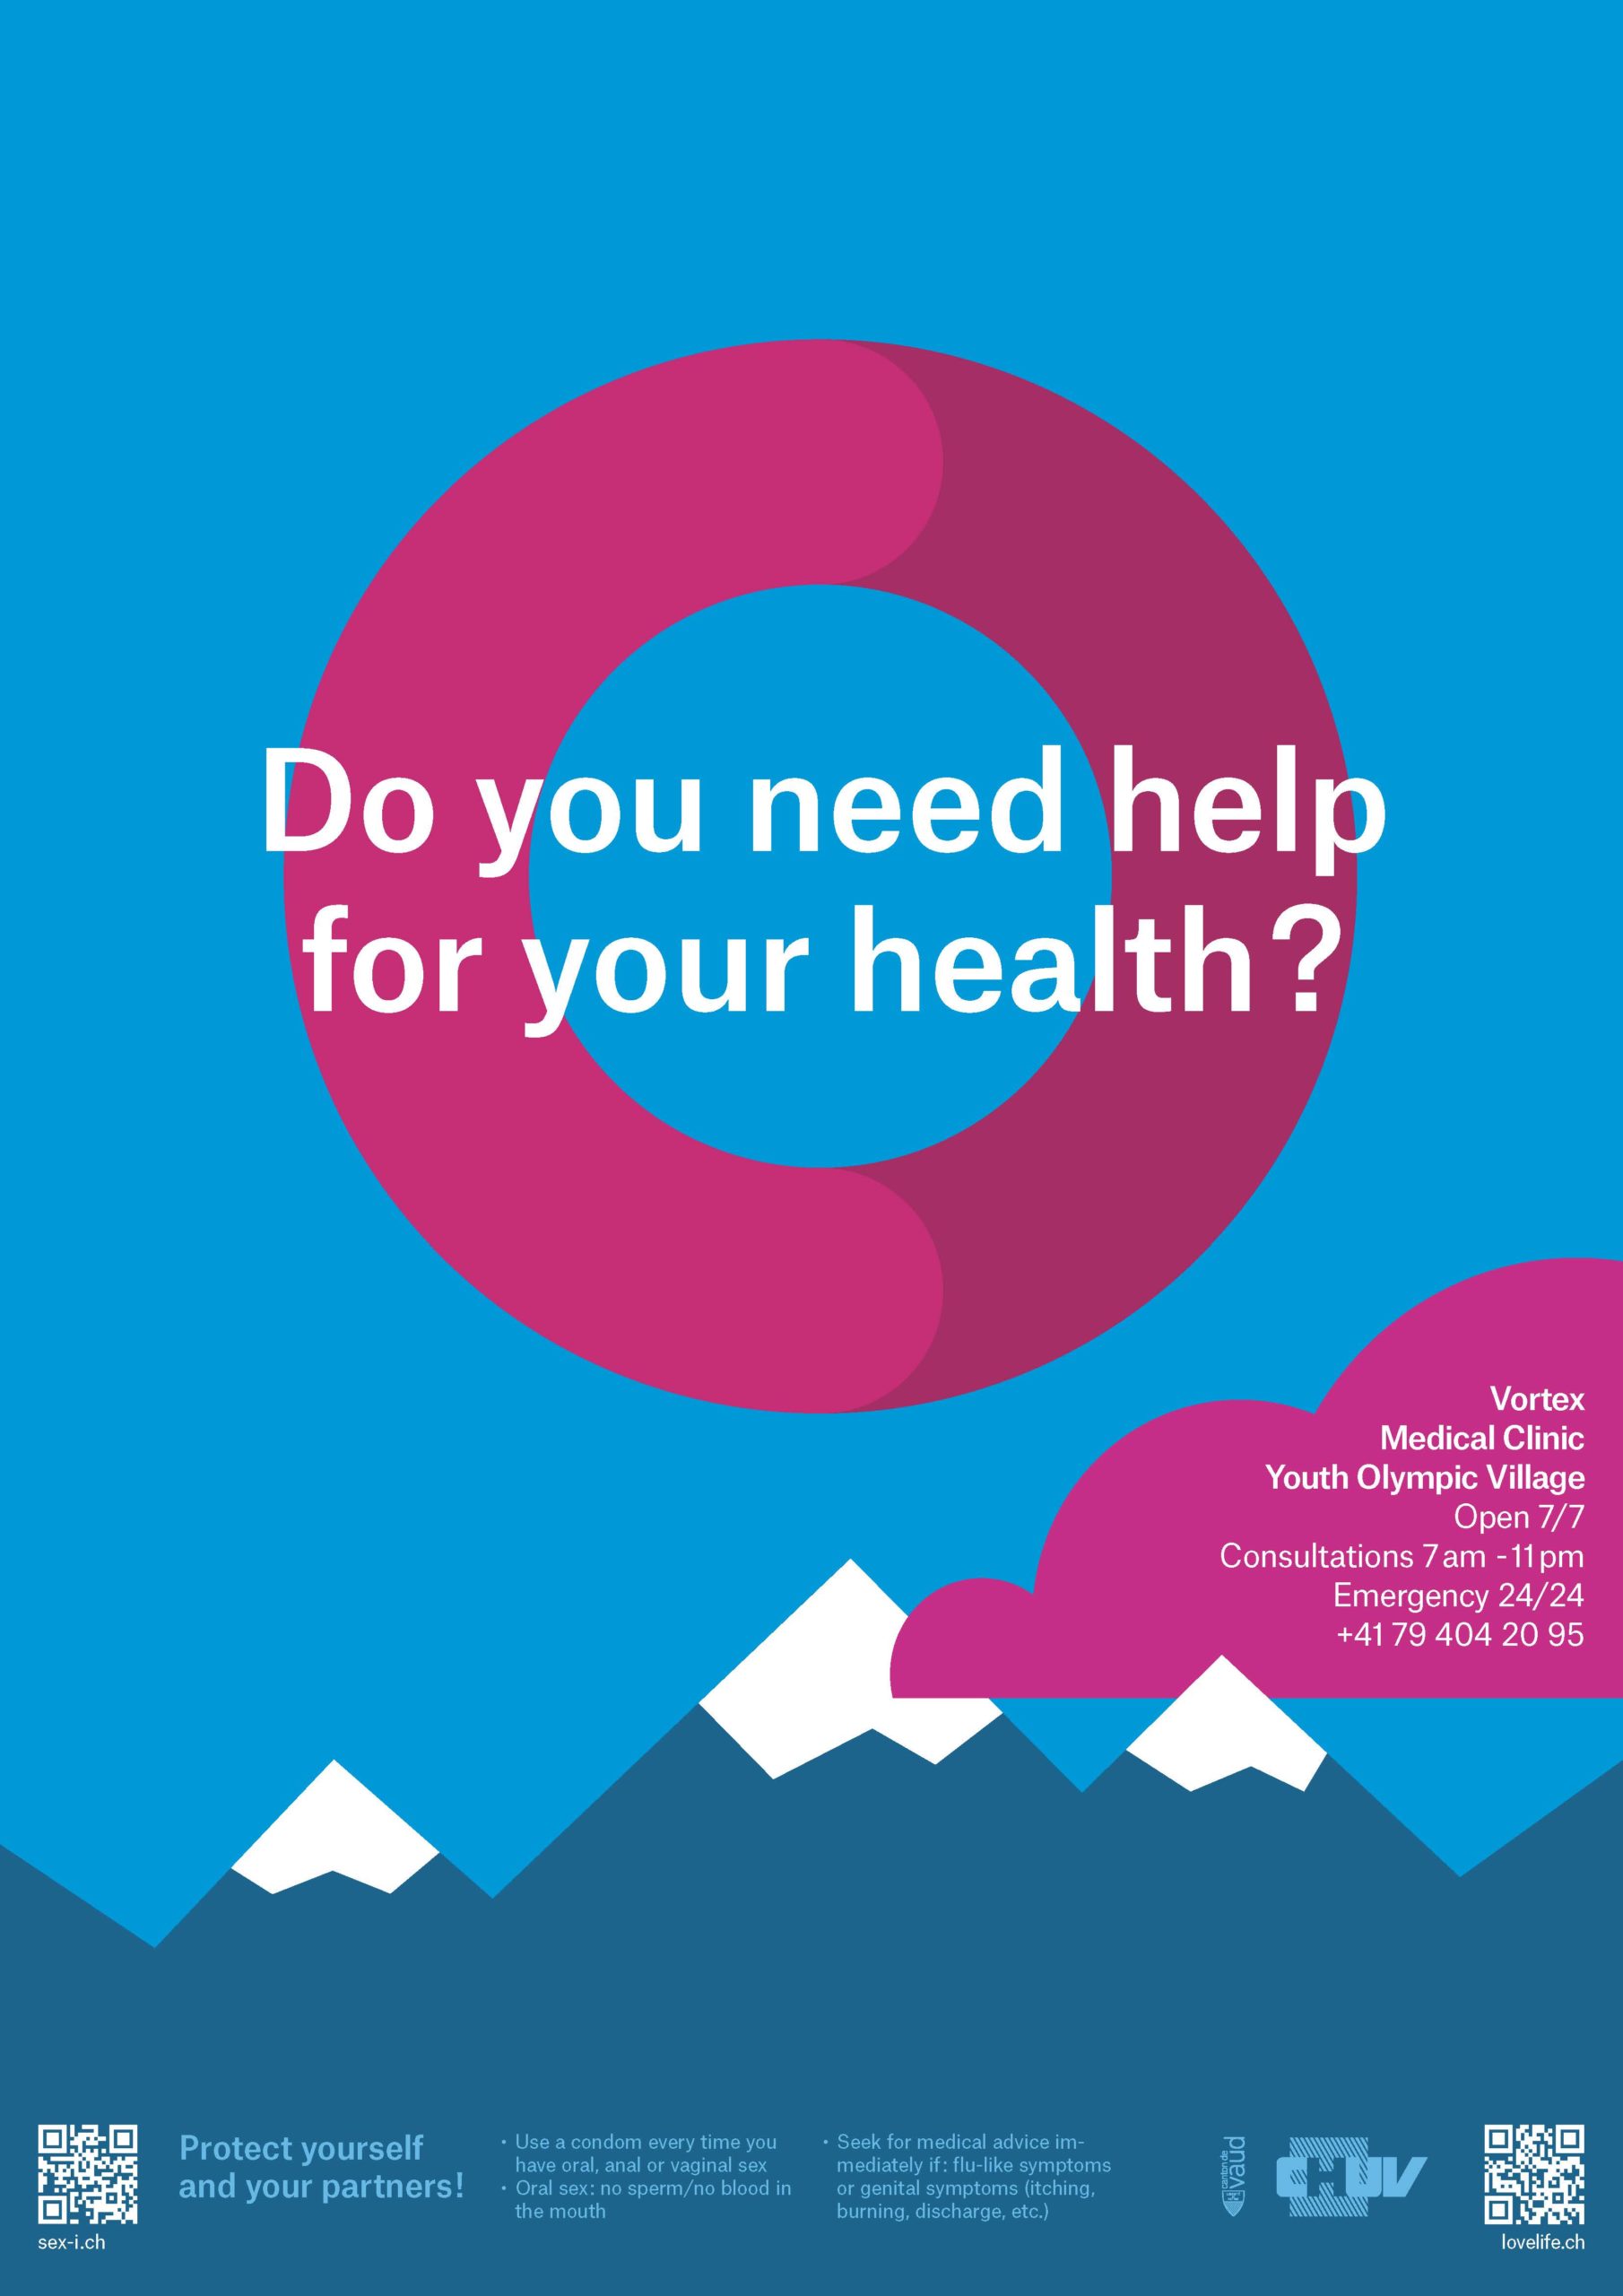 Une affiche créée pour les JOJ 2020. On y voit des montagnes très graphiques. On voit un cercle au centre qui reprend l'identité graphique des JOJ 2020 avec comme question en anglais: "Tu as besoin d'aide pour ta santé?"